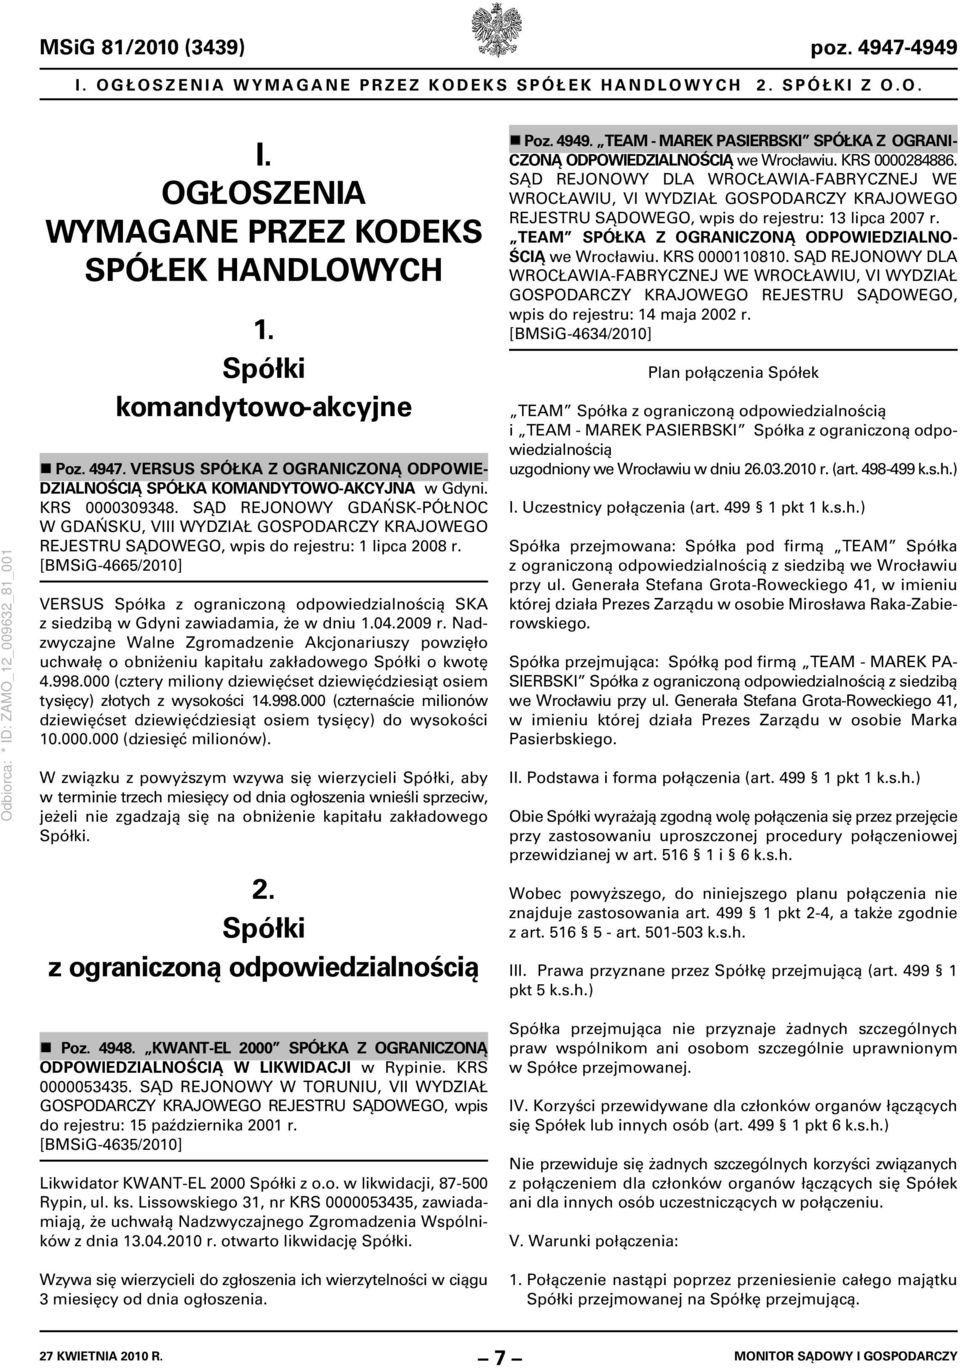 [BMSiG-4665/2010] VERSUS Spółka z ograniczoną odpowiedzialnością SKA z siedzibą w Gdyni zawiadamia, że w dniu 1.04.2009 r.